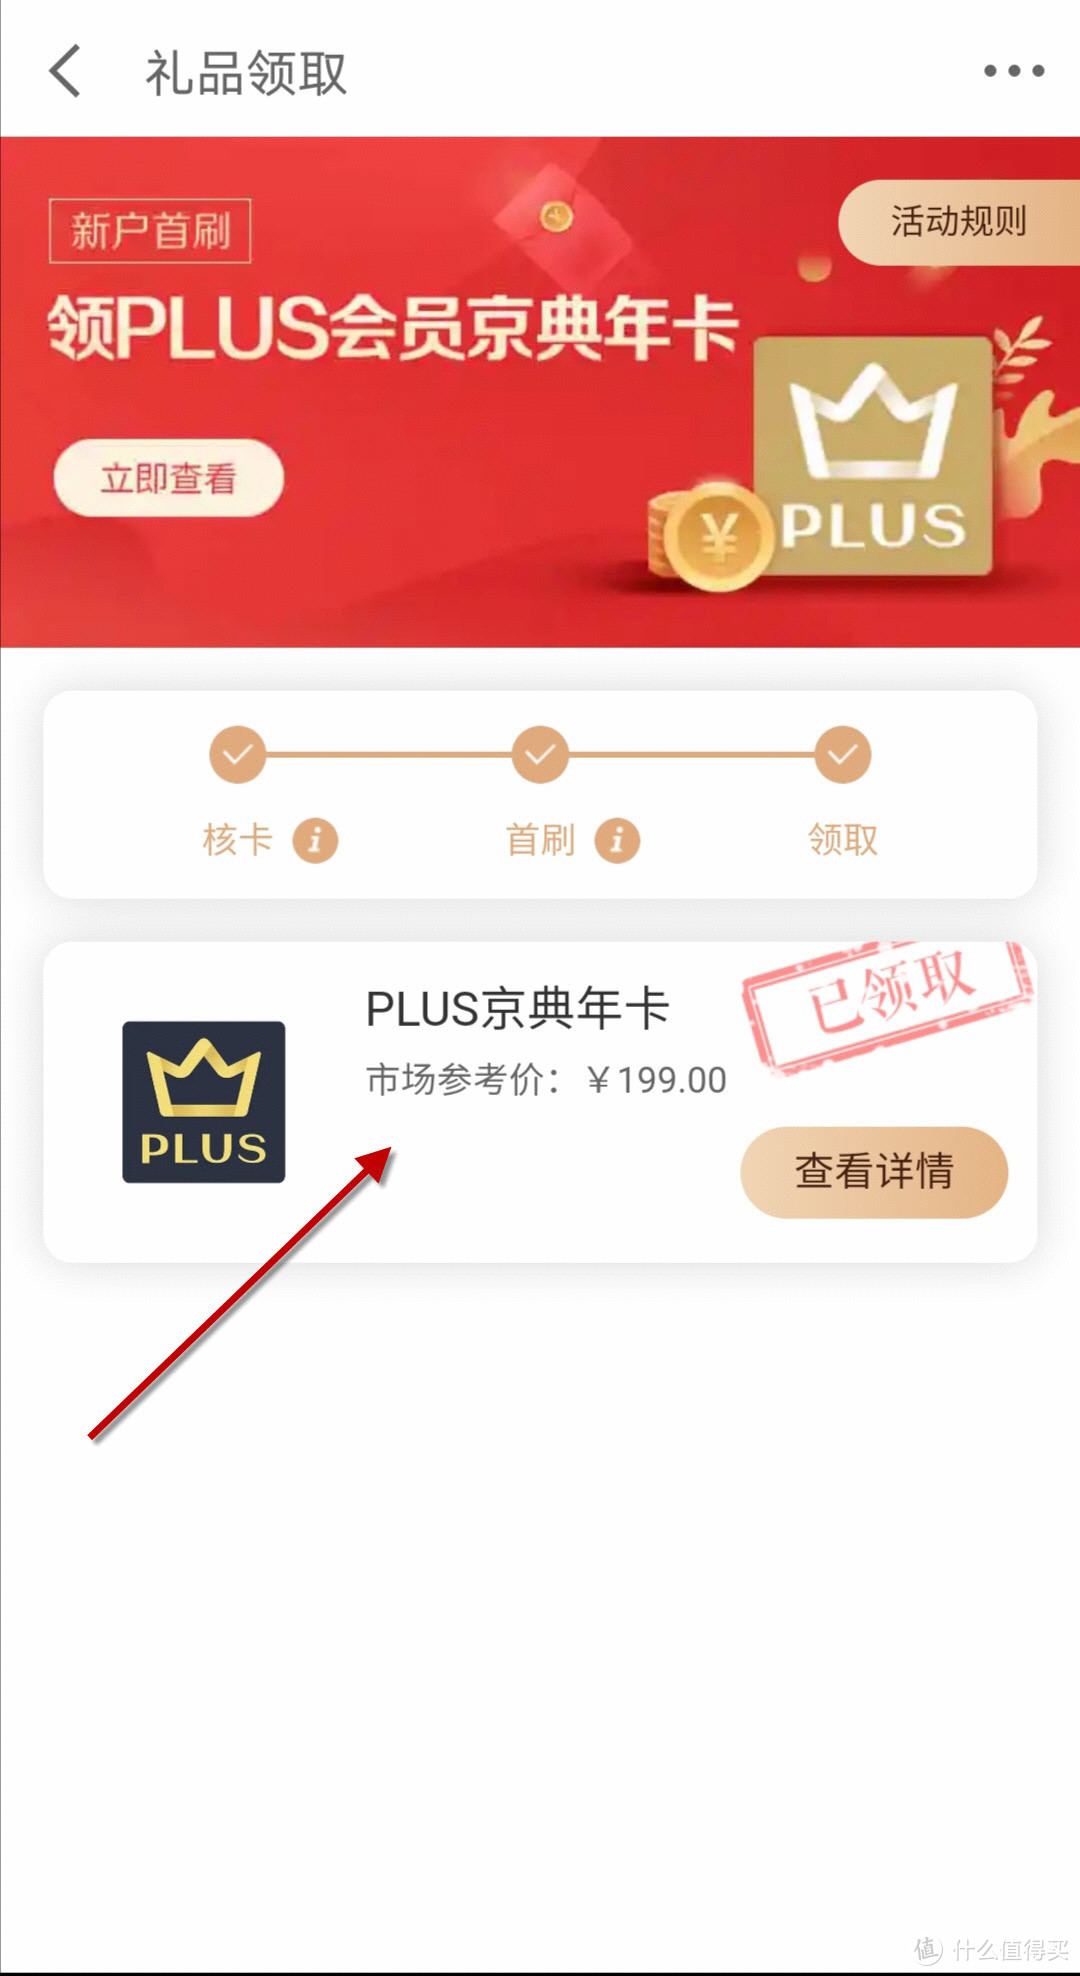 宁波银行京东Plus联名卡Plus会员领取